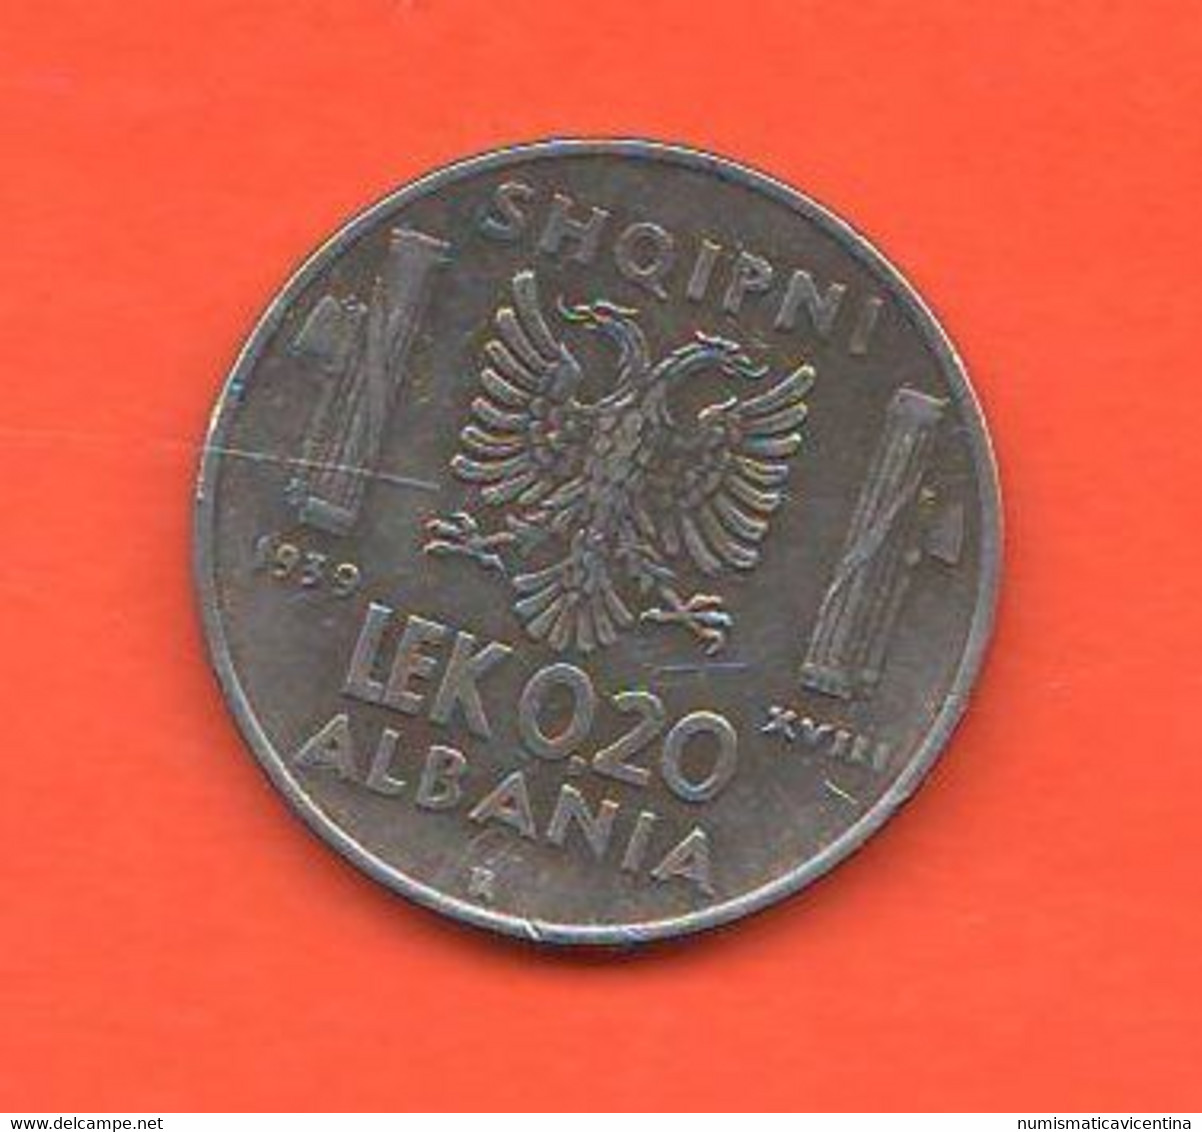 Albania 0,20 Lek 1939 Albanie Shqipni Steel Coin - Albanien